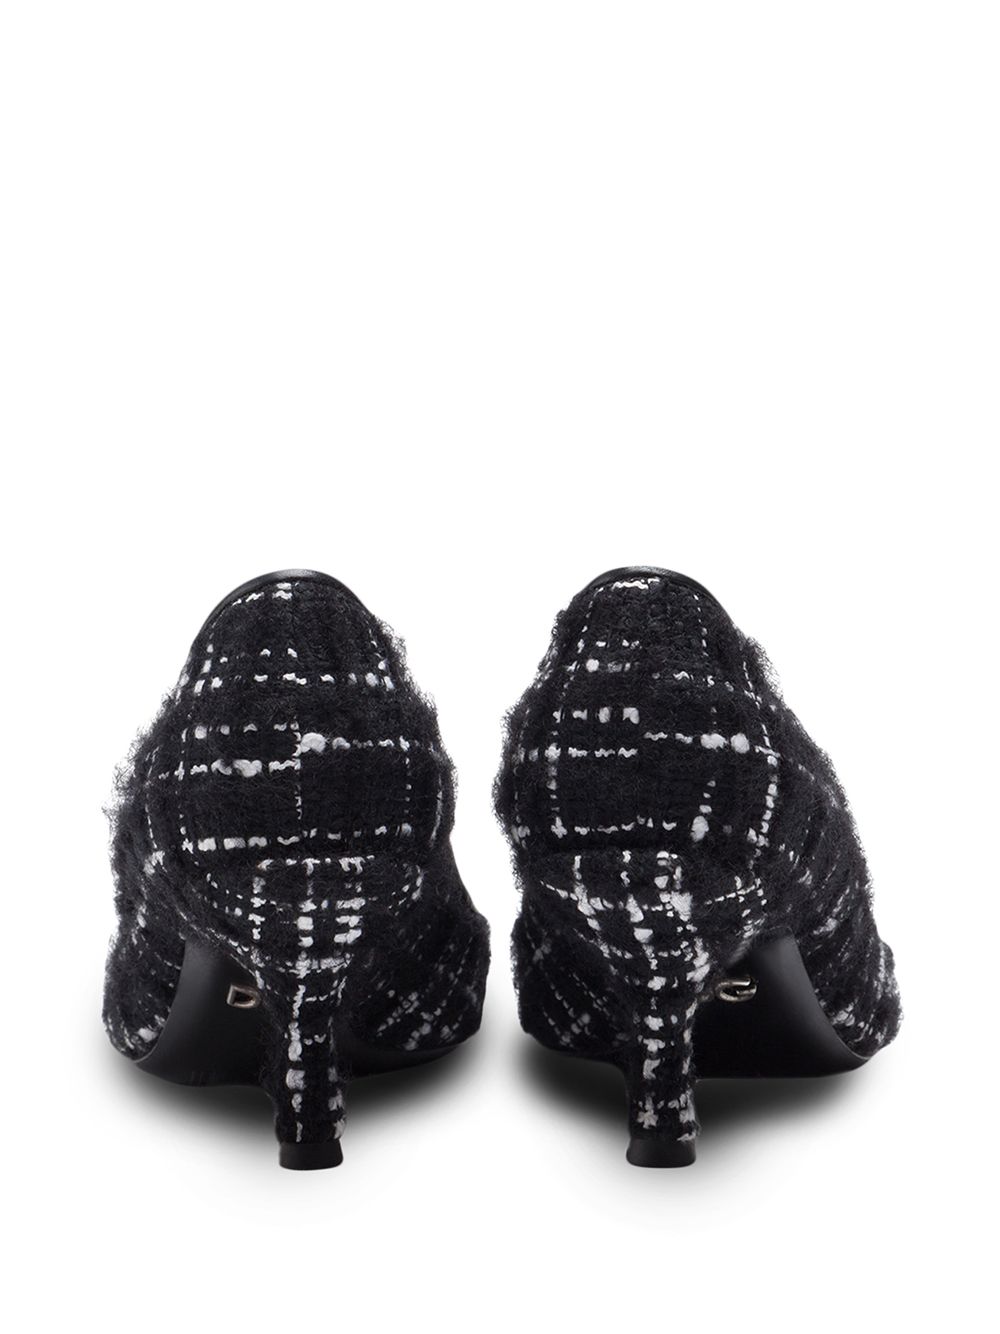 фото Dolce & gabbana твидовые туфли-лодочки с логотипом